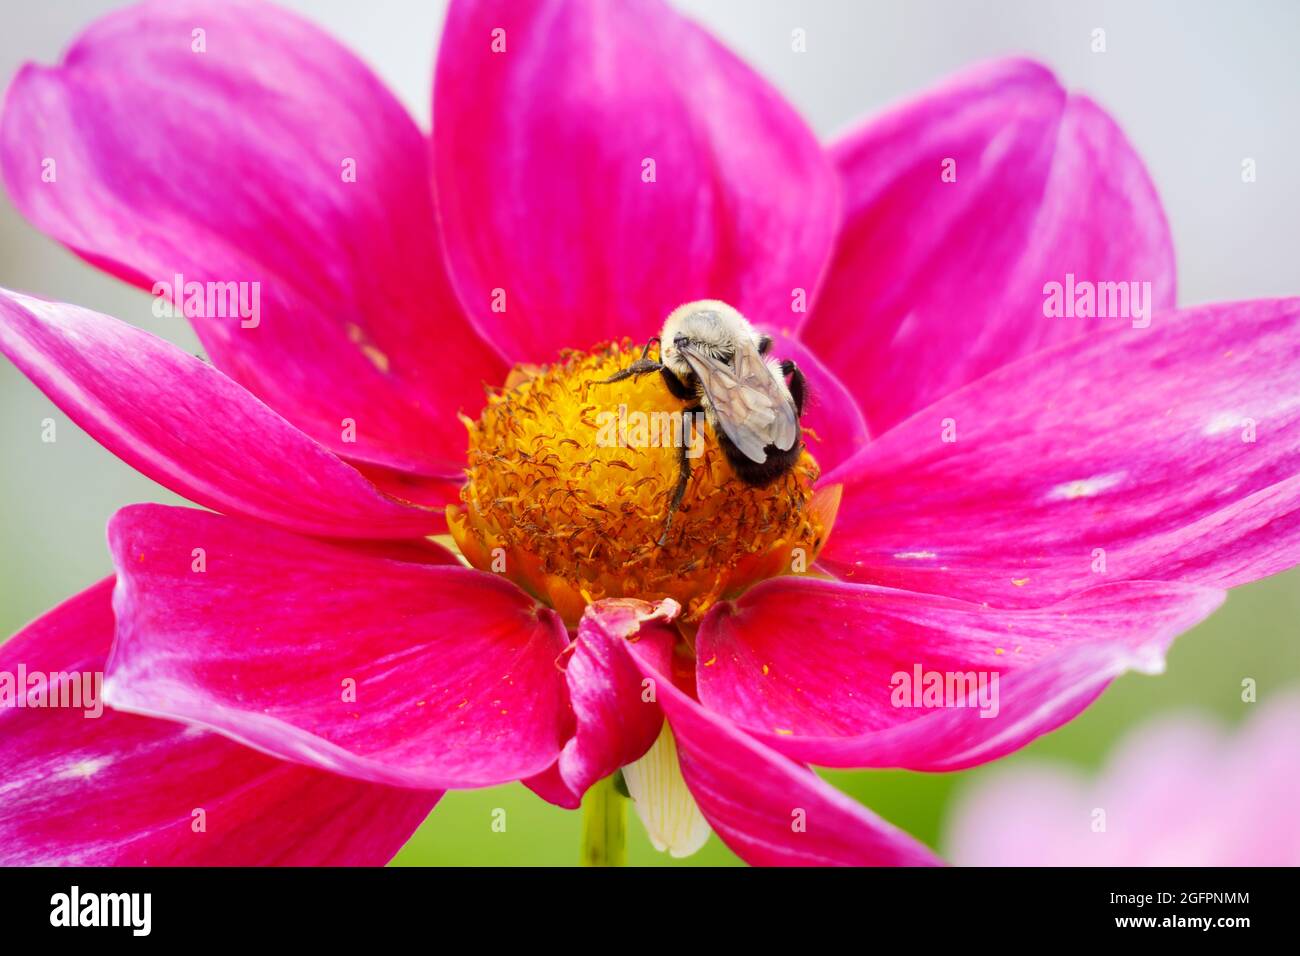 Rose Mignon Shades eine Dahlia-Blume mit ihren leuchtend rosa Fuchsia-Blütenblättern zieht eine Bumble Bee an, die im Gelben Zentrum gelandet ist, um sie zu bestäuben Stockfoto